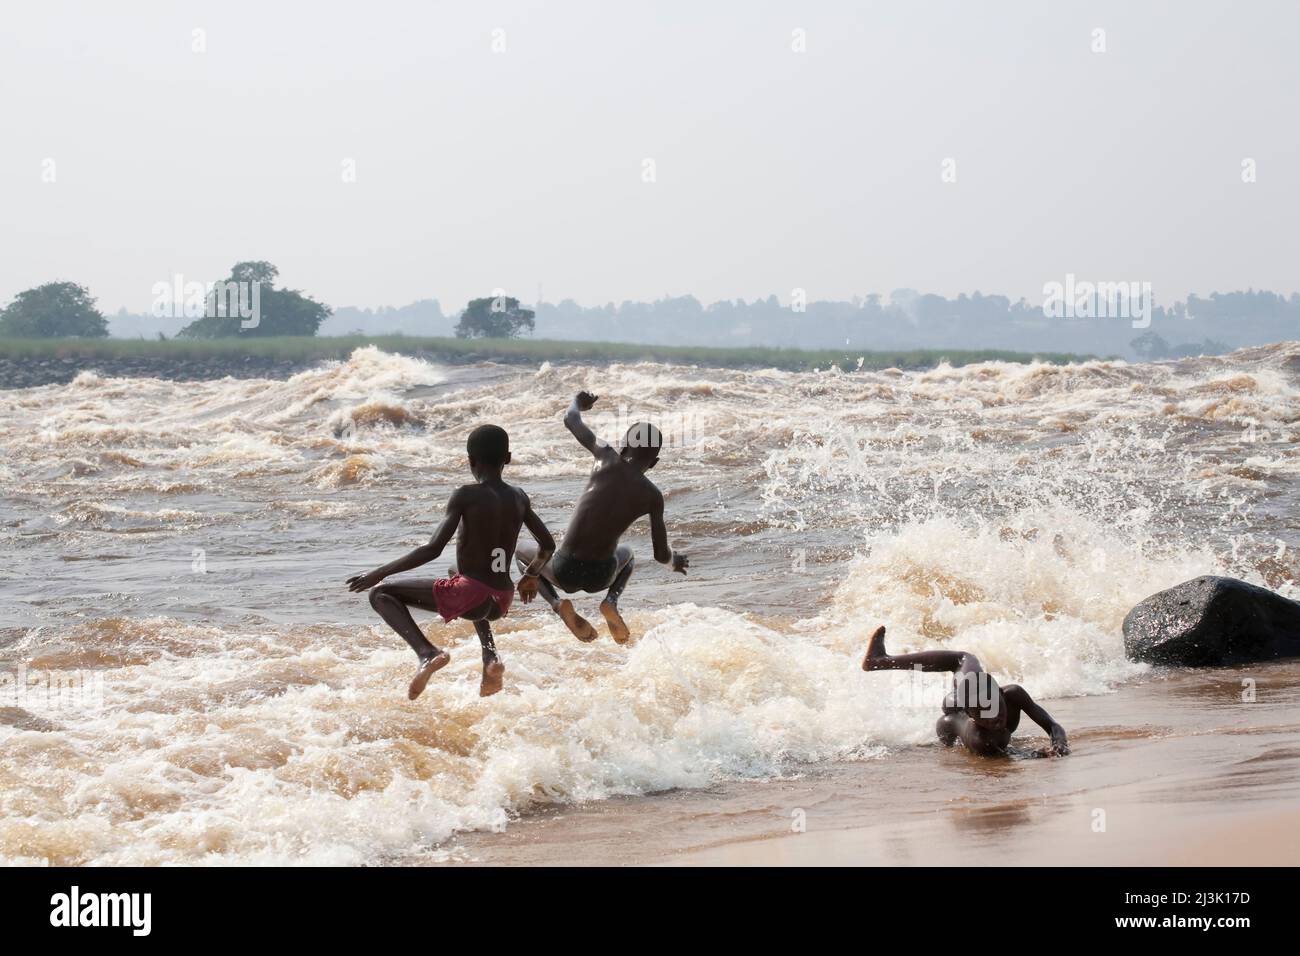 Junge kongolesische Jungen spielen entlang des Zaire River in Kinsuka Rapids; Kongo River Kinshasa, Demokratische Republik Kongo. Stockfoto